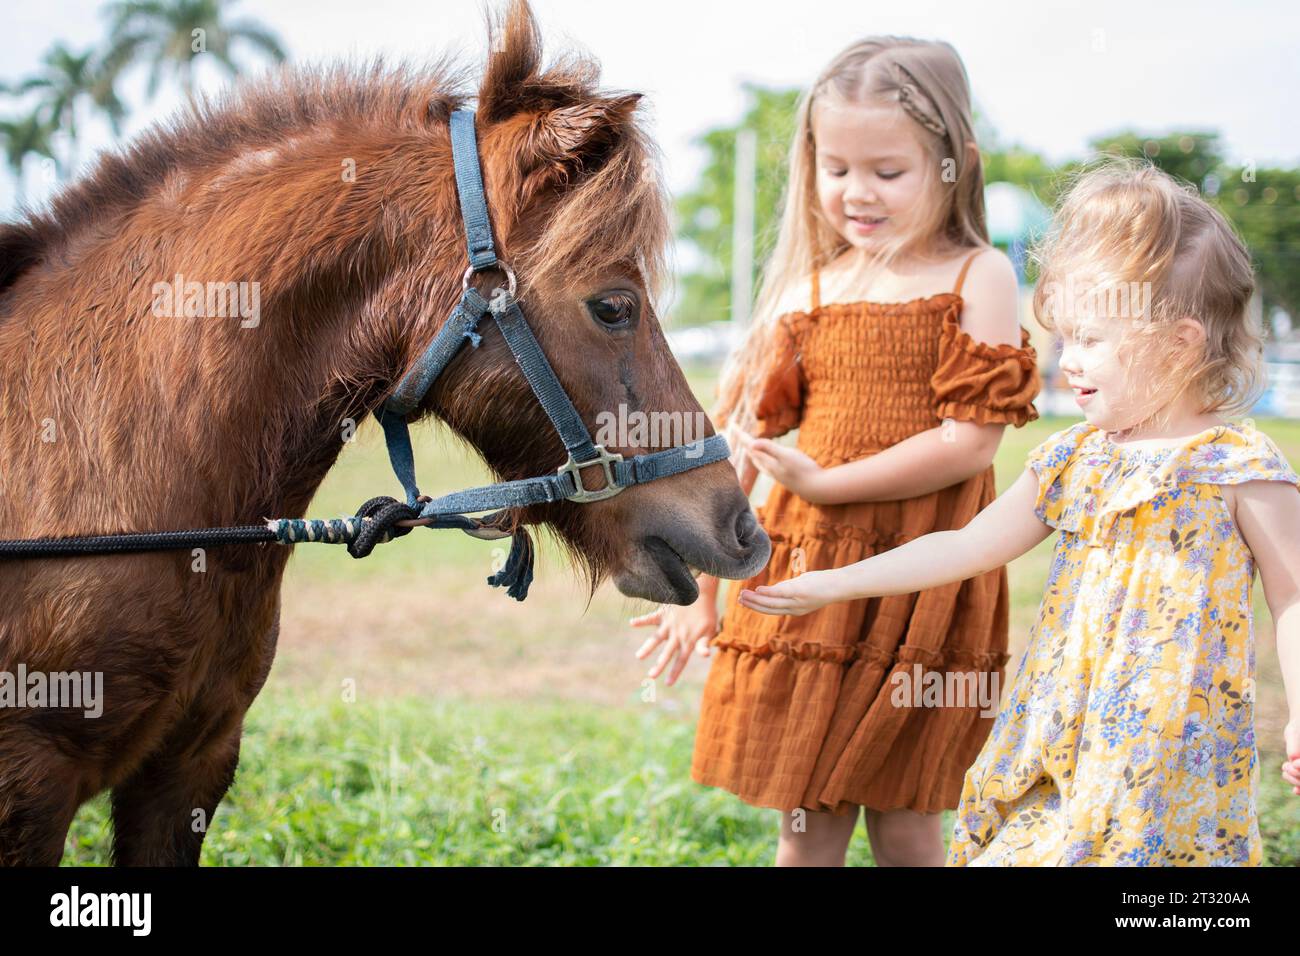 Deux petites filles nourrissant un poney. Ferme et enfants. Activités amusantes d'automne pour les enfants à la ferme. Nourrir les animaux de ferme. Banque D'Images